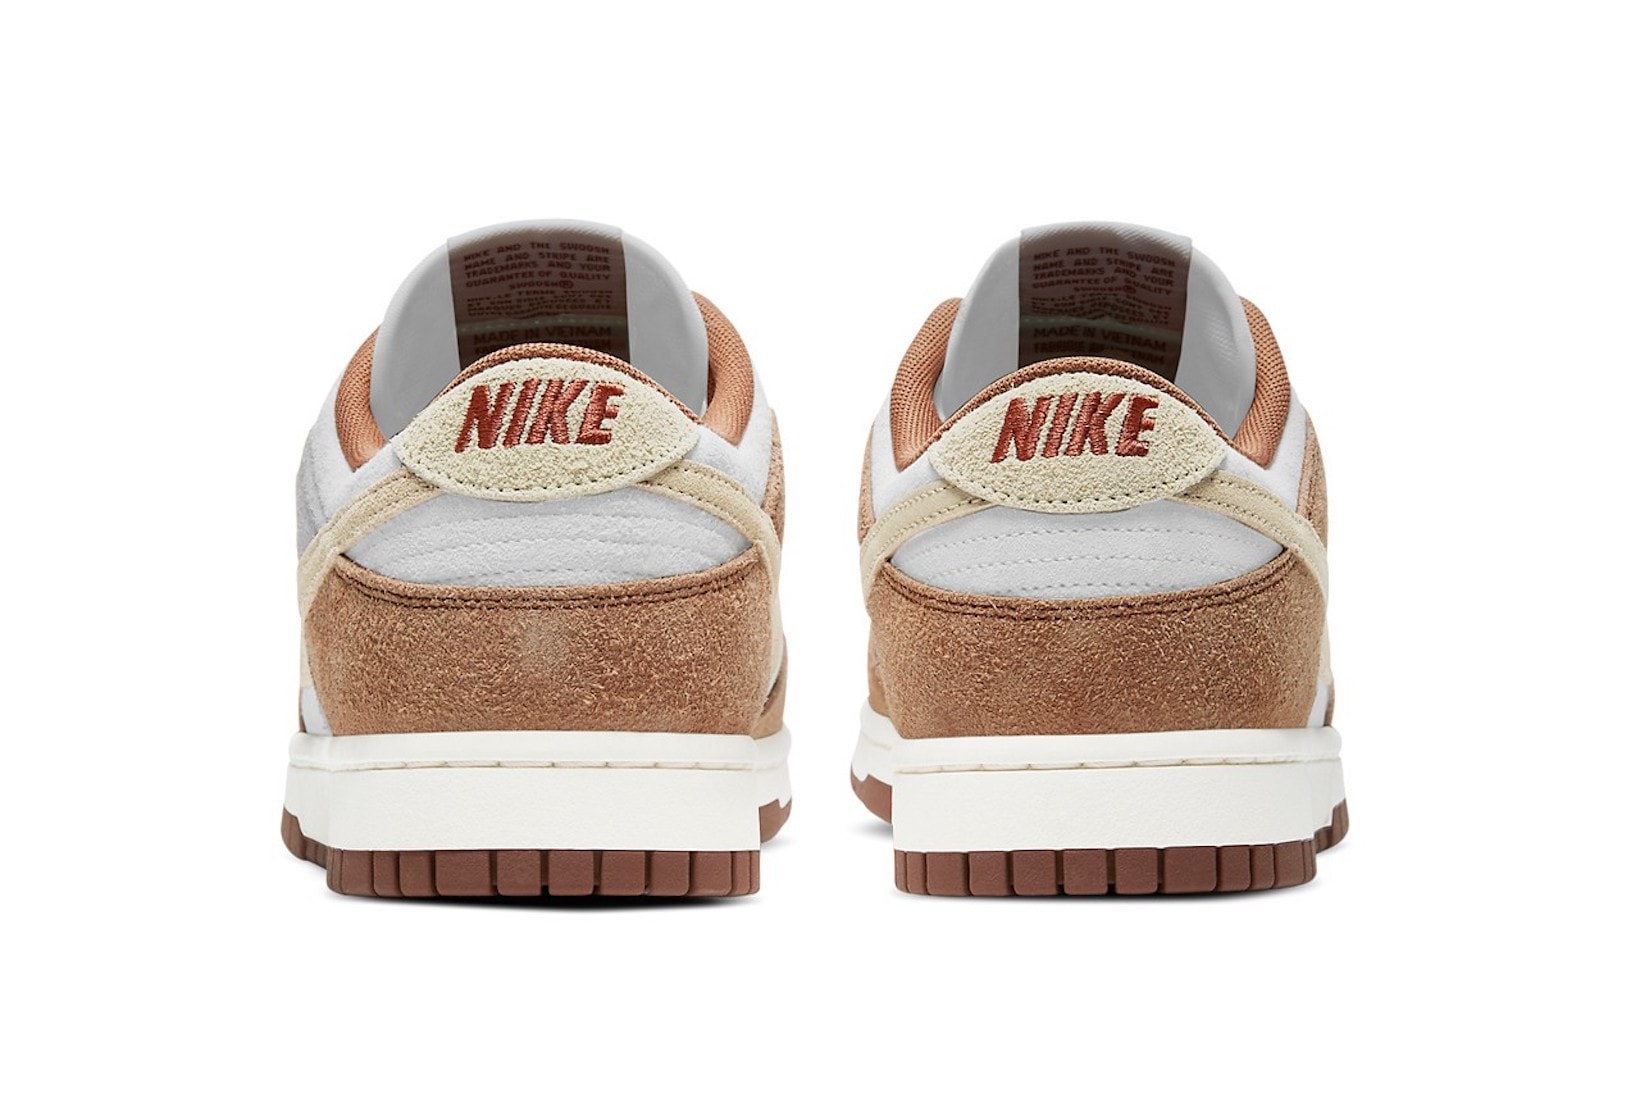 nike dunk low sneakers medium curry brown white beige colorway sneakerhead footwear shoes